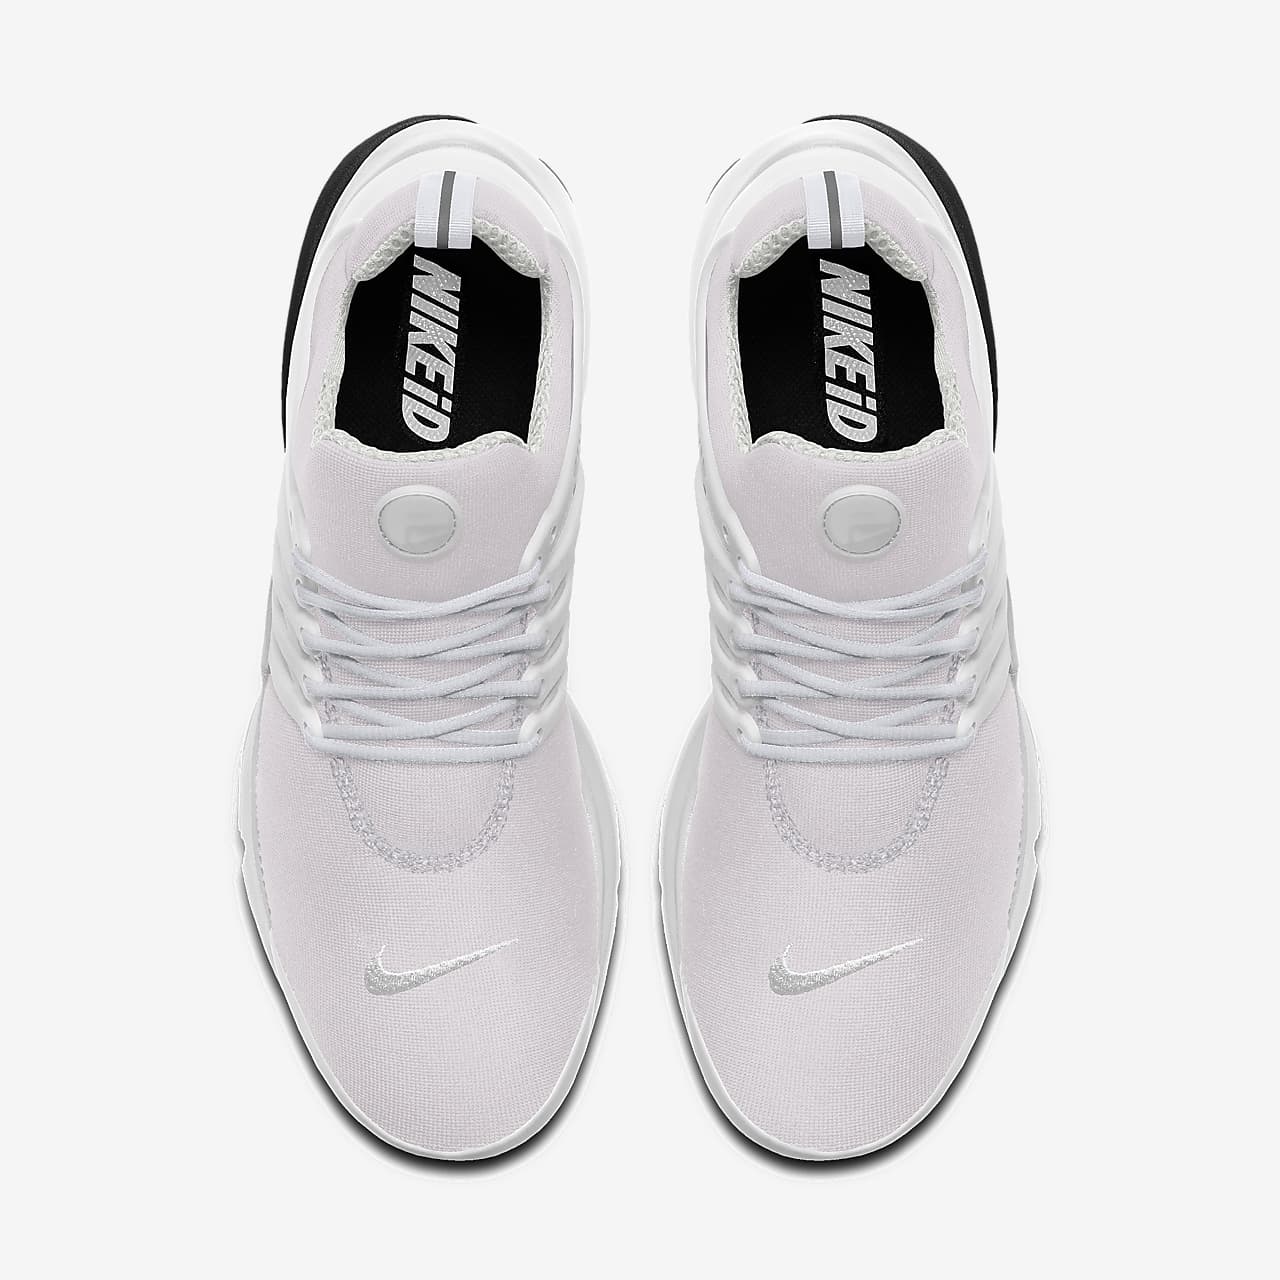 Мужские кроссовки с индивидуальным дизайном Nike Air Presto By You. Nike RU